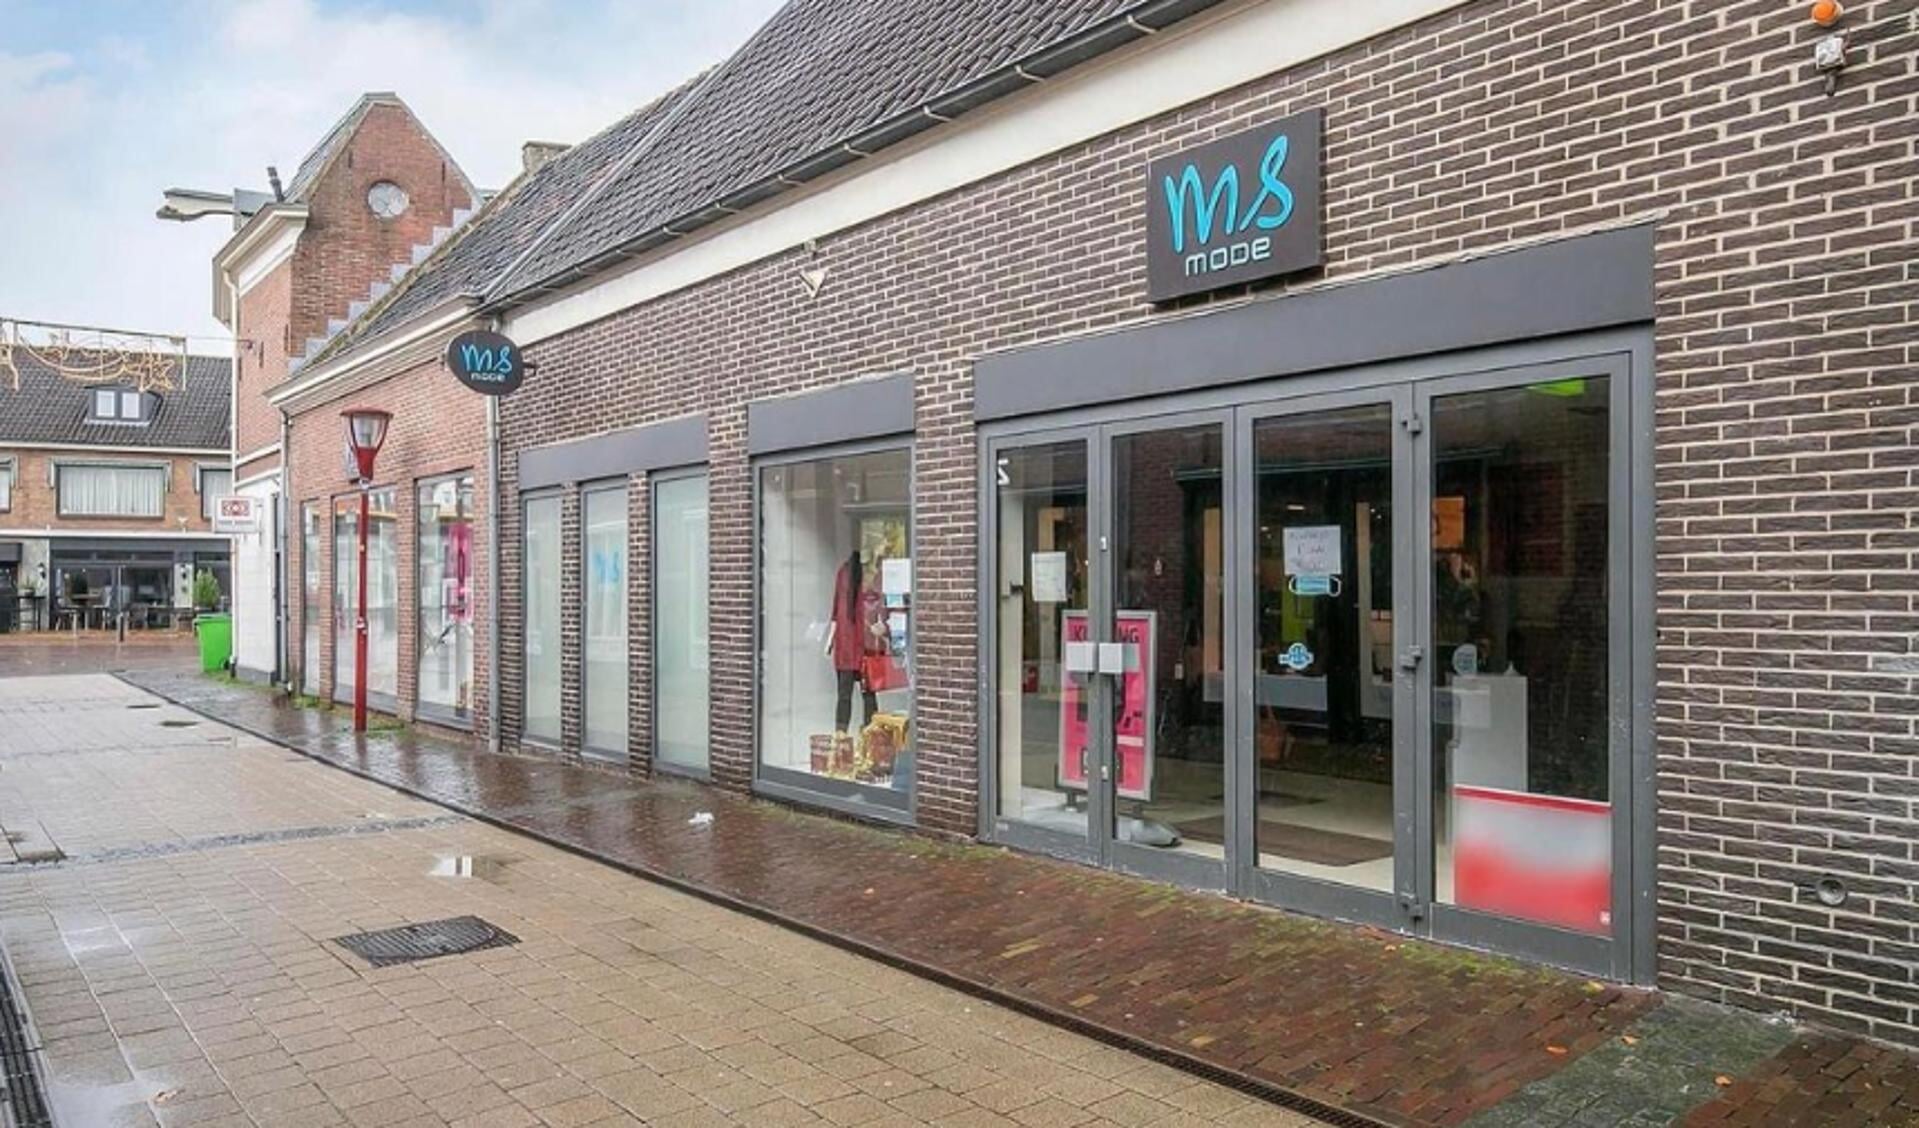 Dosering Vooruitzicht drinken Broekhuizen Schoenen opent vestiging in Nijkerk - StadNijkerk.nl Nieuws uit  de regio Nijkerk